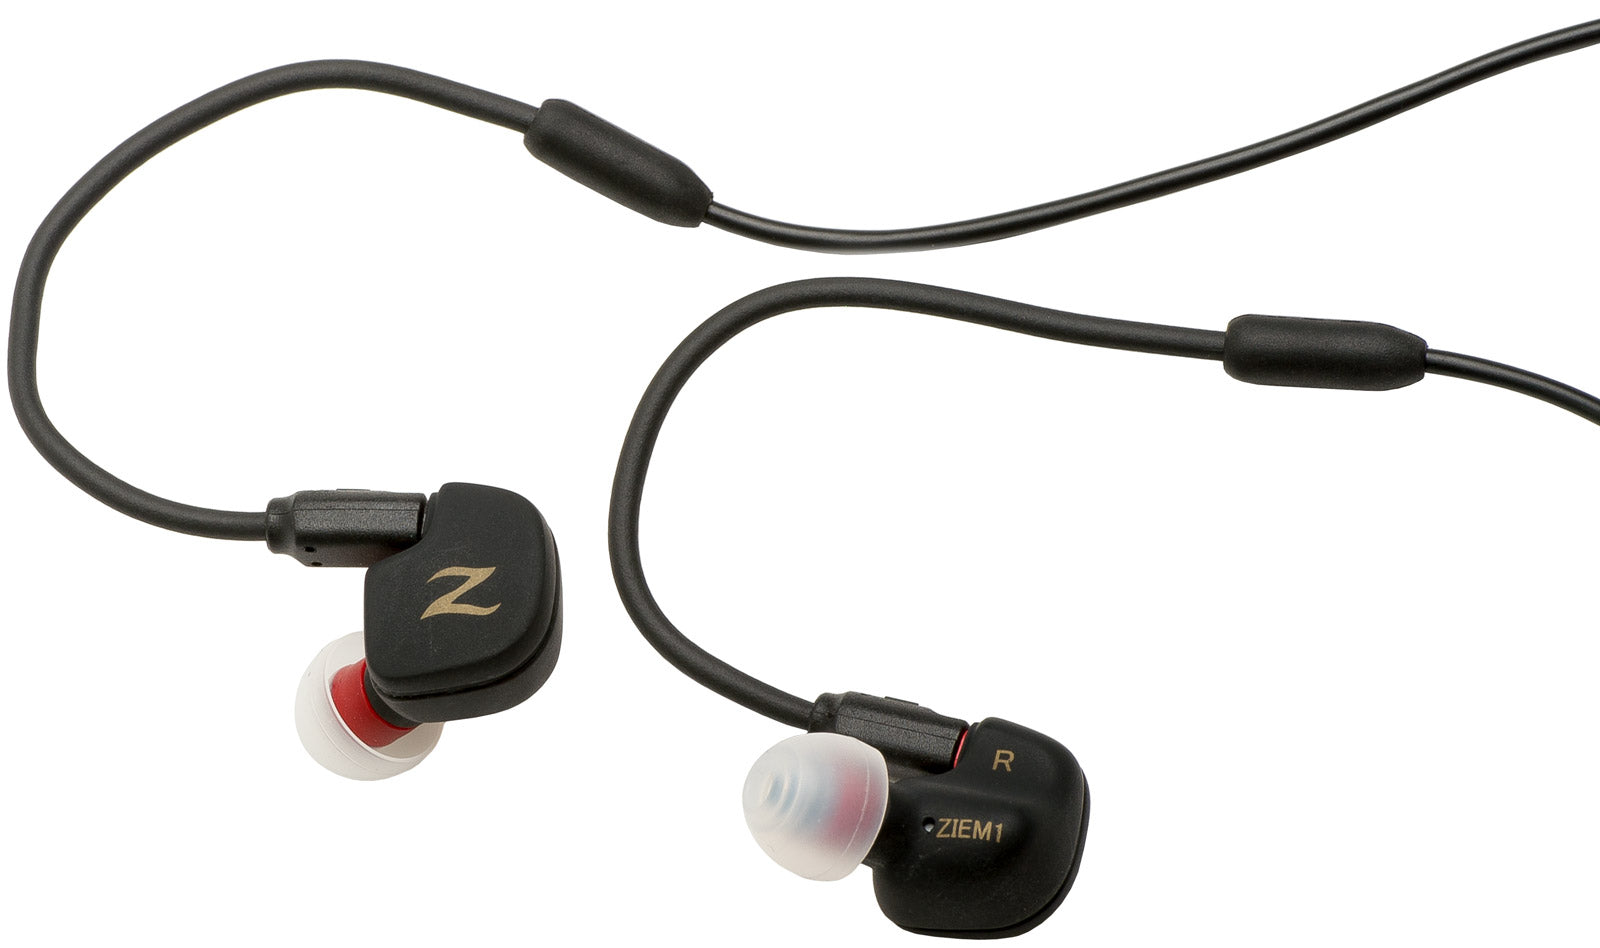 Zildjian Professional In-Ear Monitors